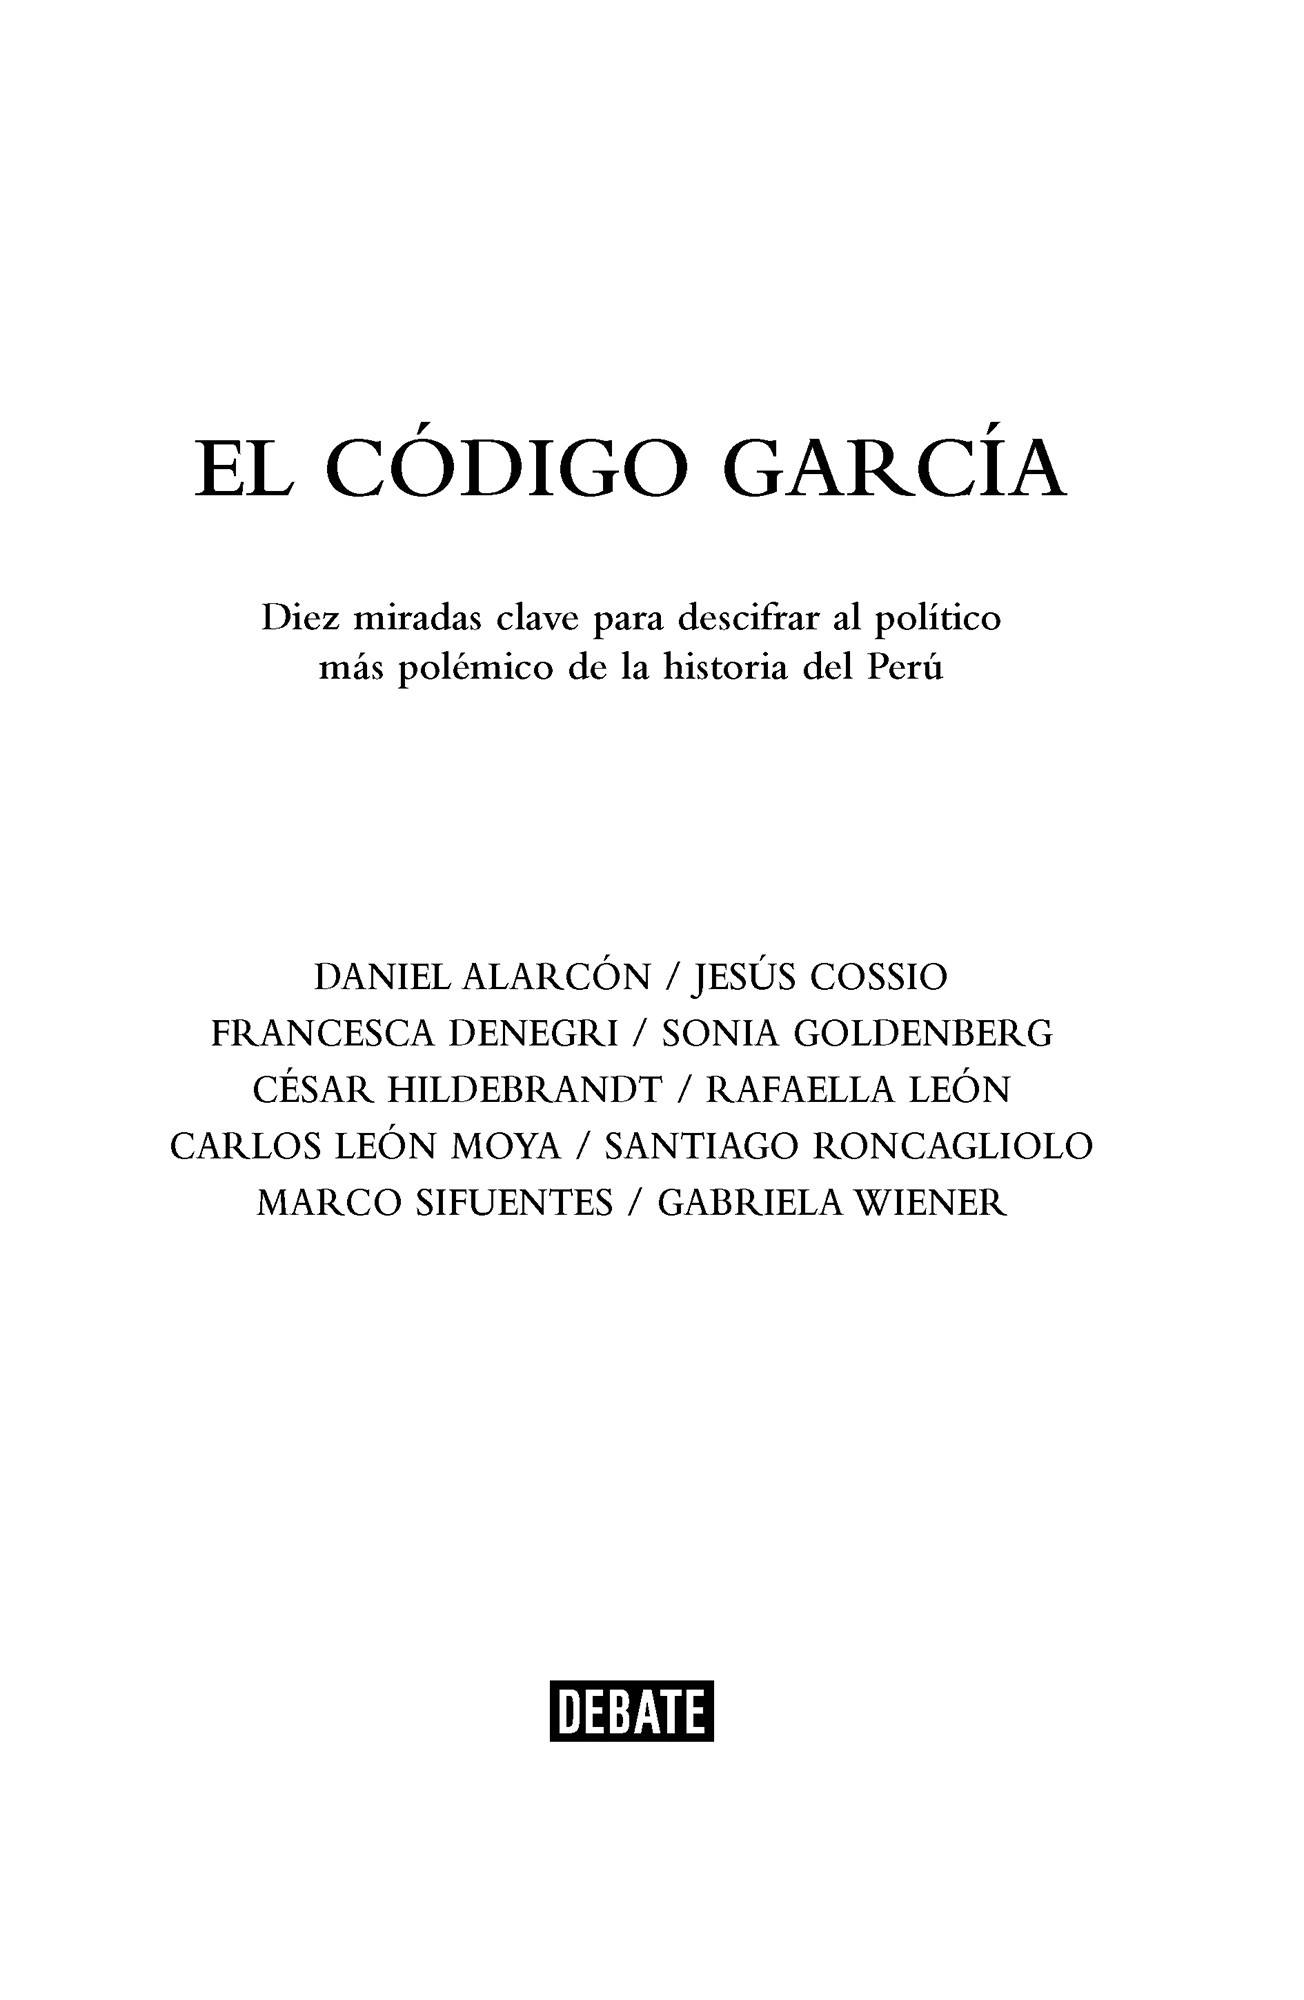 El Código García - image 3